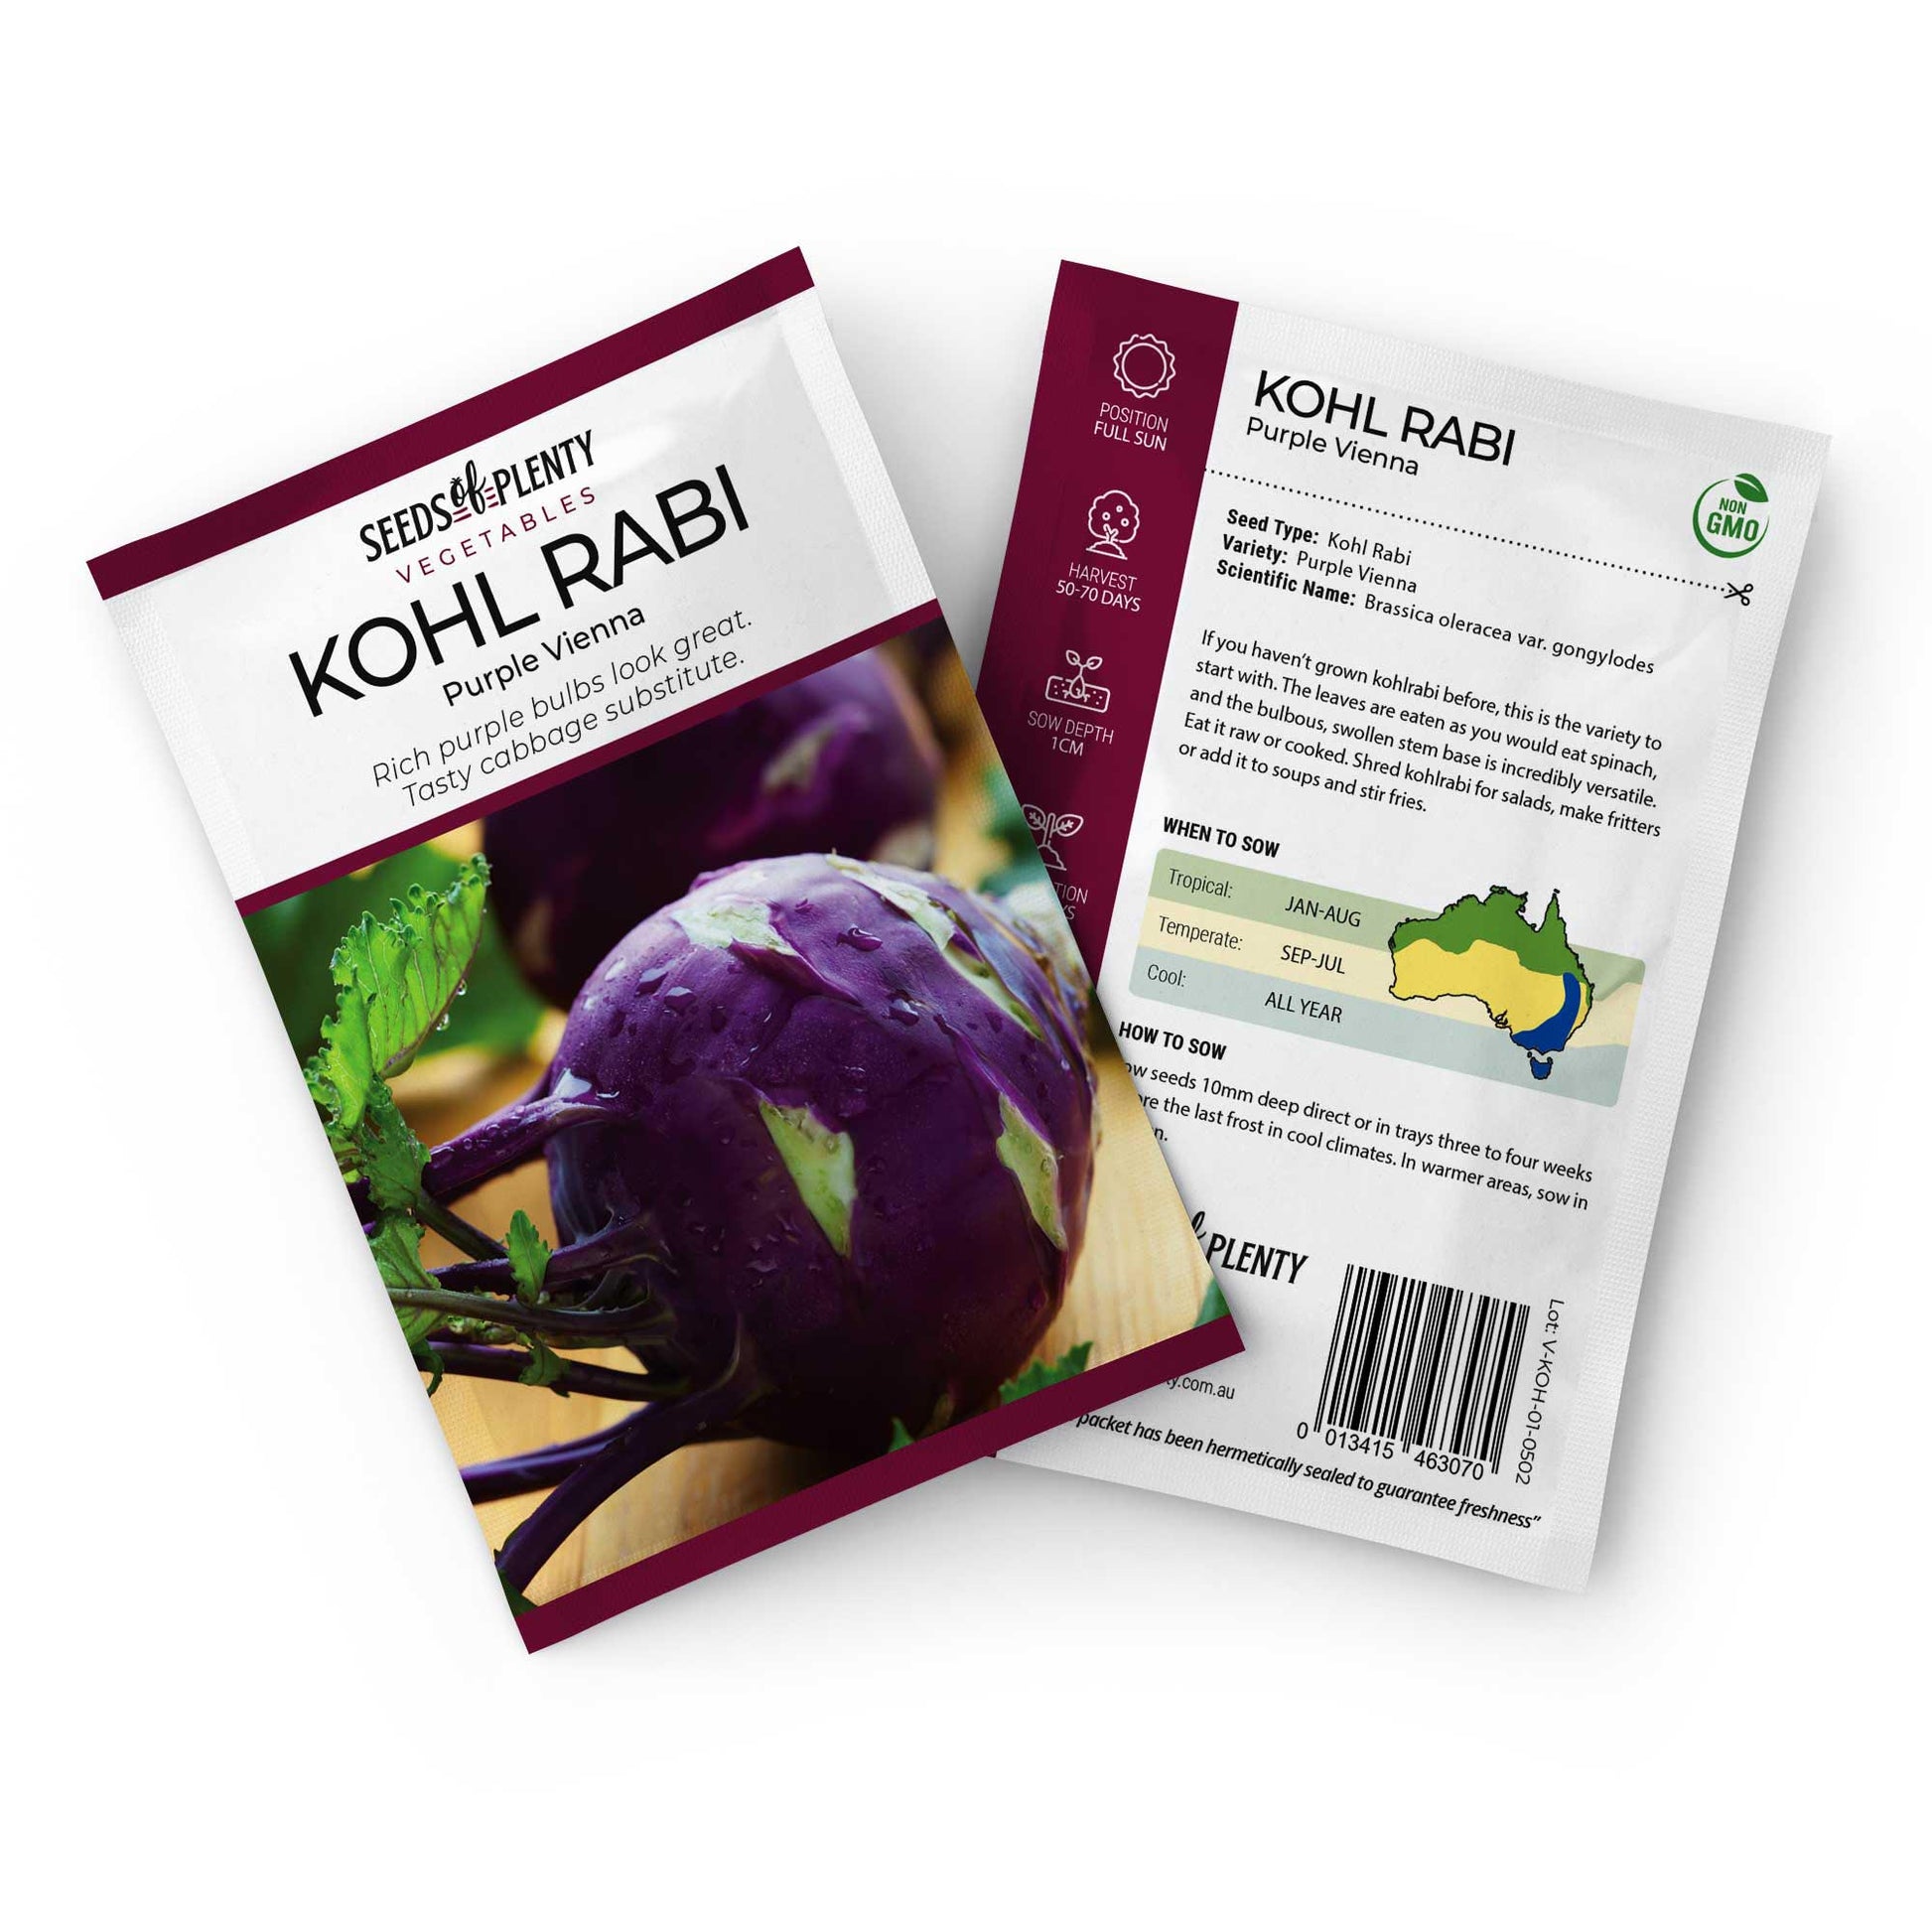 KOHL RABI - Purple Vienna Default Title